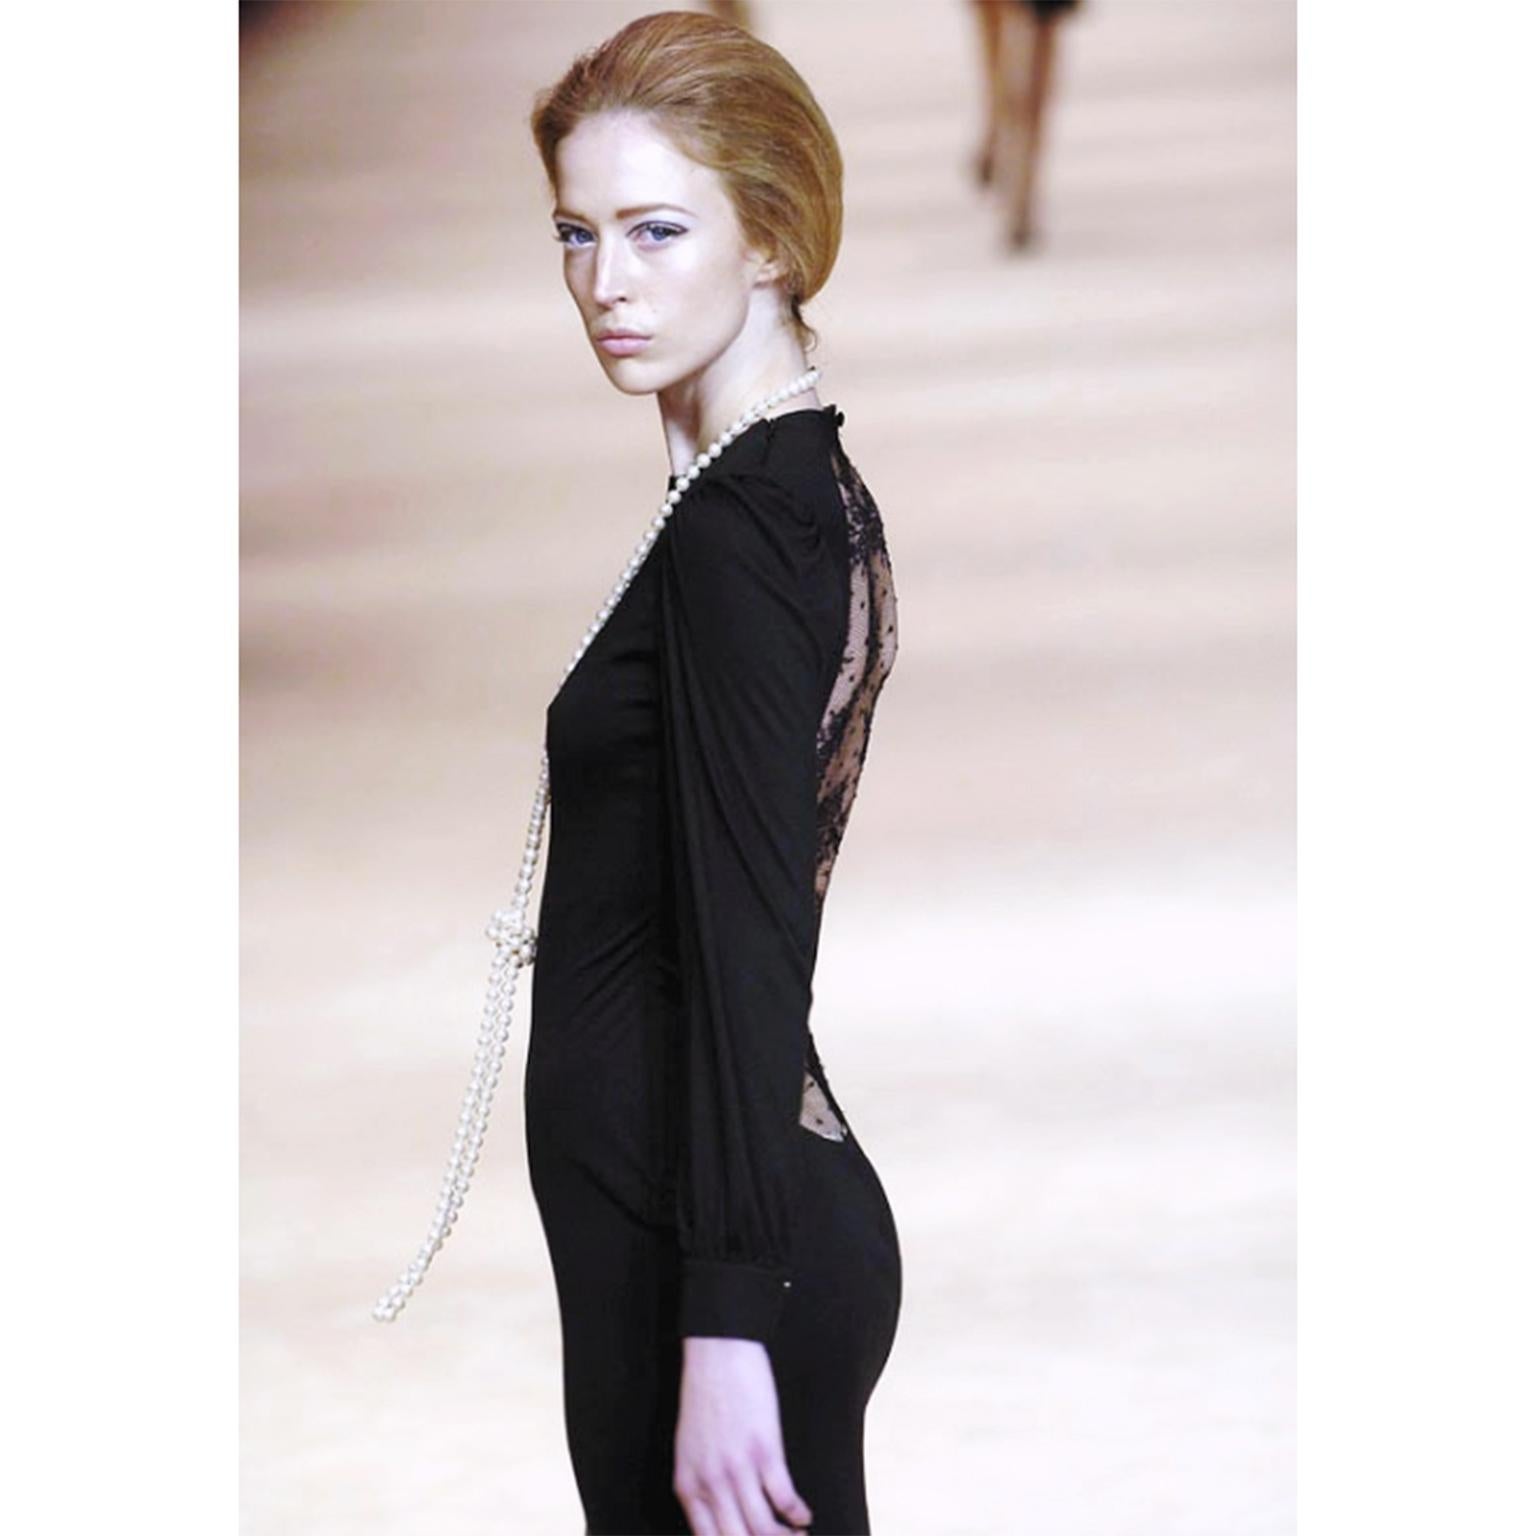 Alexander McQueen 2005 - Superbe robe du soir en jersey stretch noir avec ouverture en dentelle au dos. Cette robe documentée, magnifique, iconique est tirée du film 